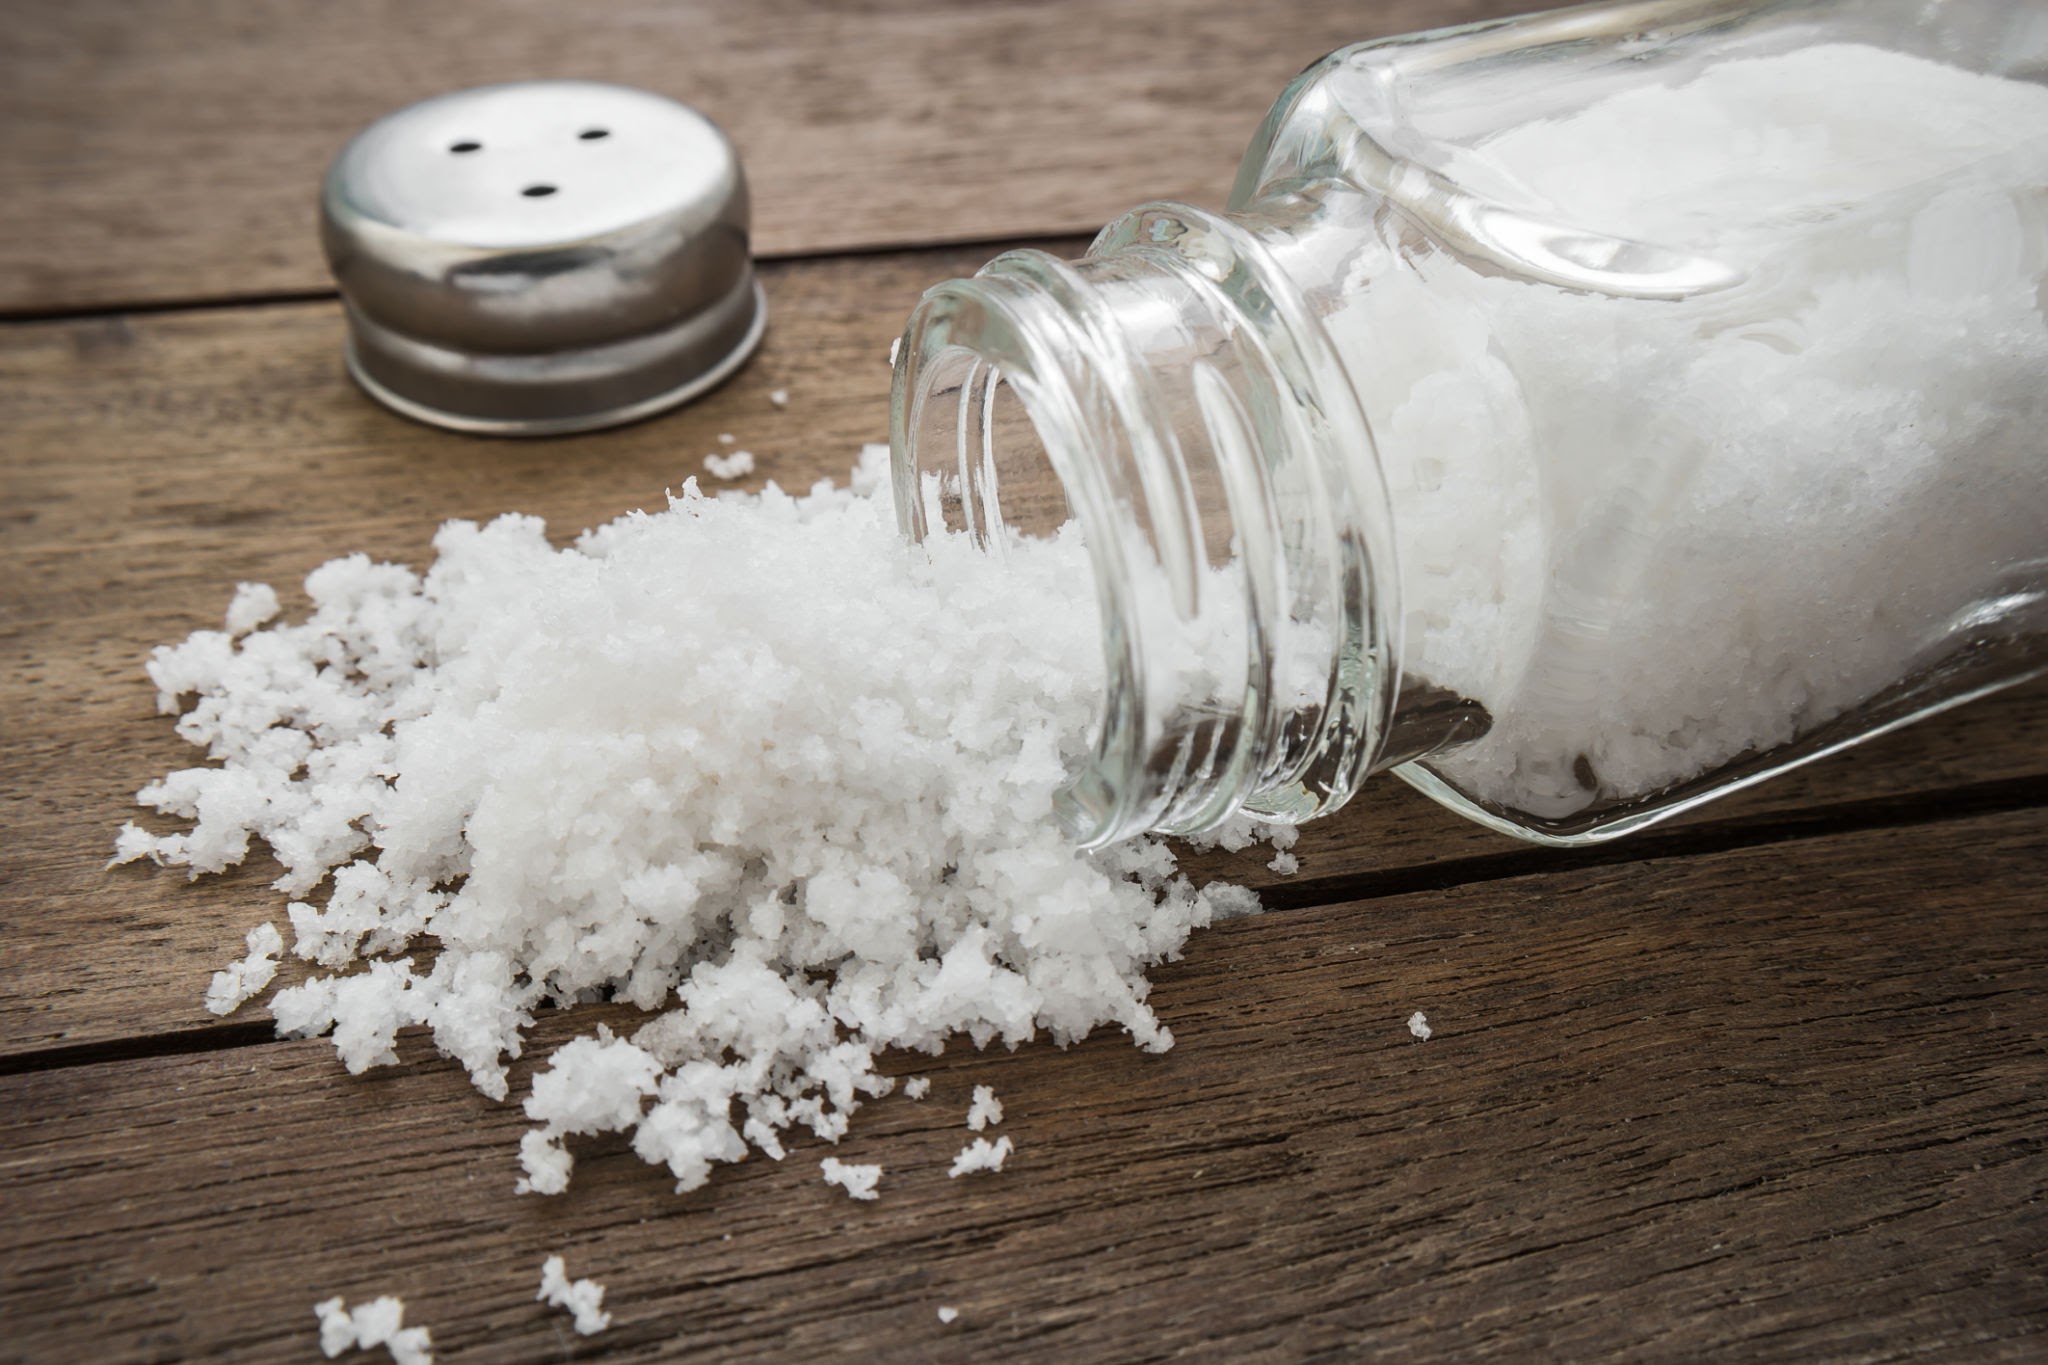 تناول الملح الزائد يزيد من خطر الإصابة بأمراض الكلى